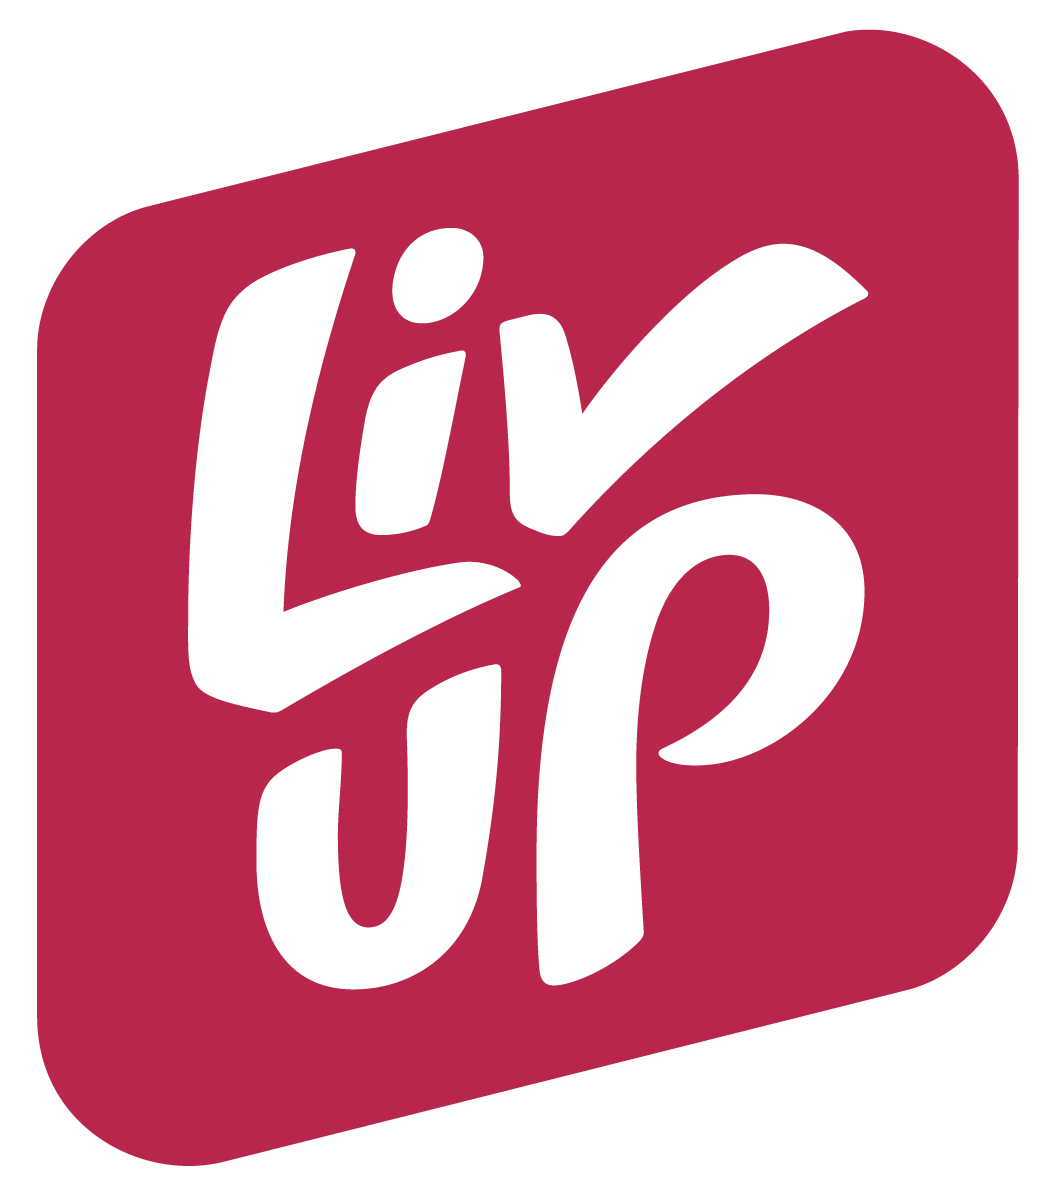 liv_up_logo.png